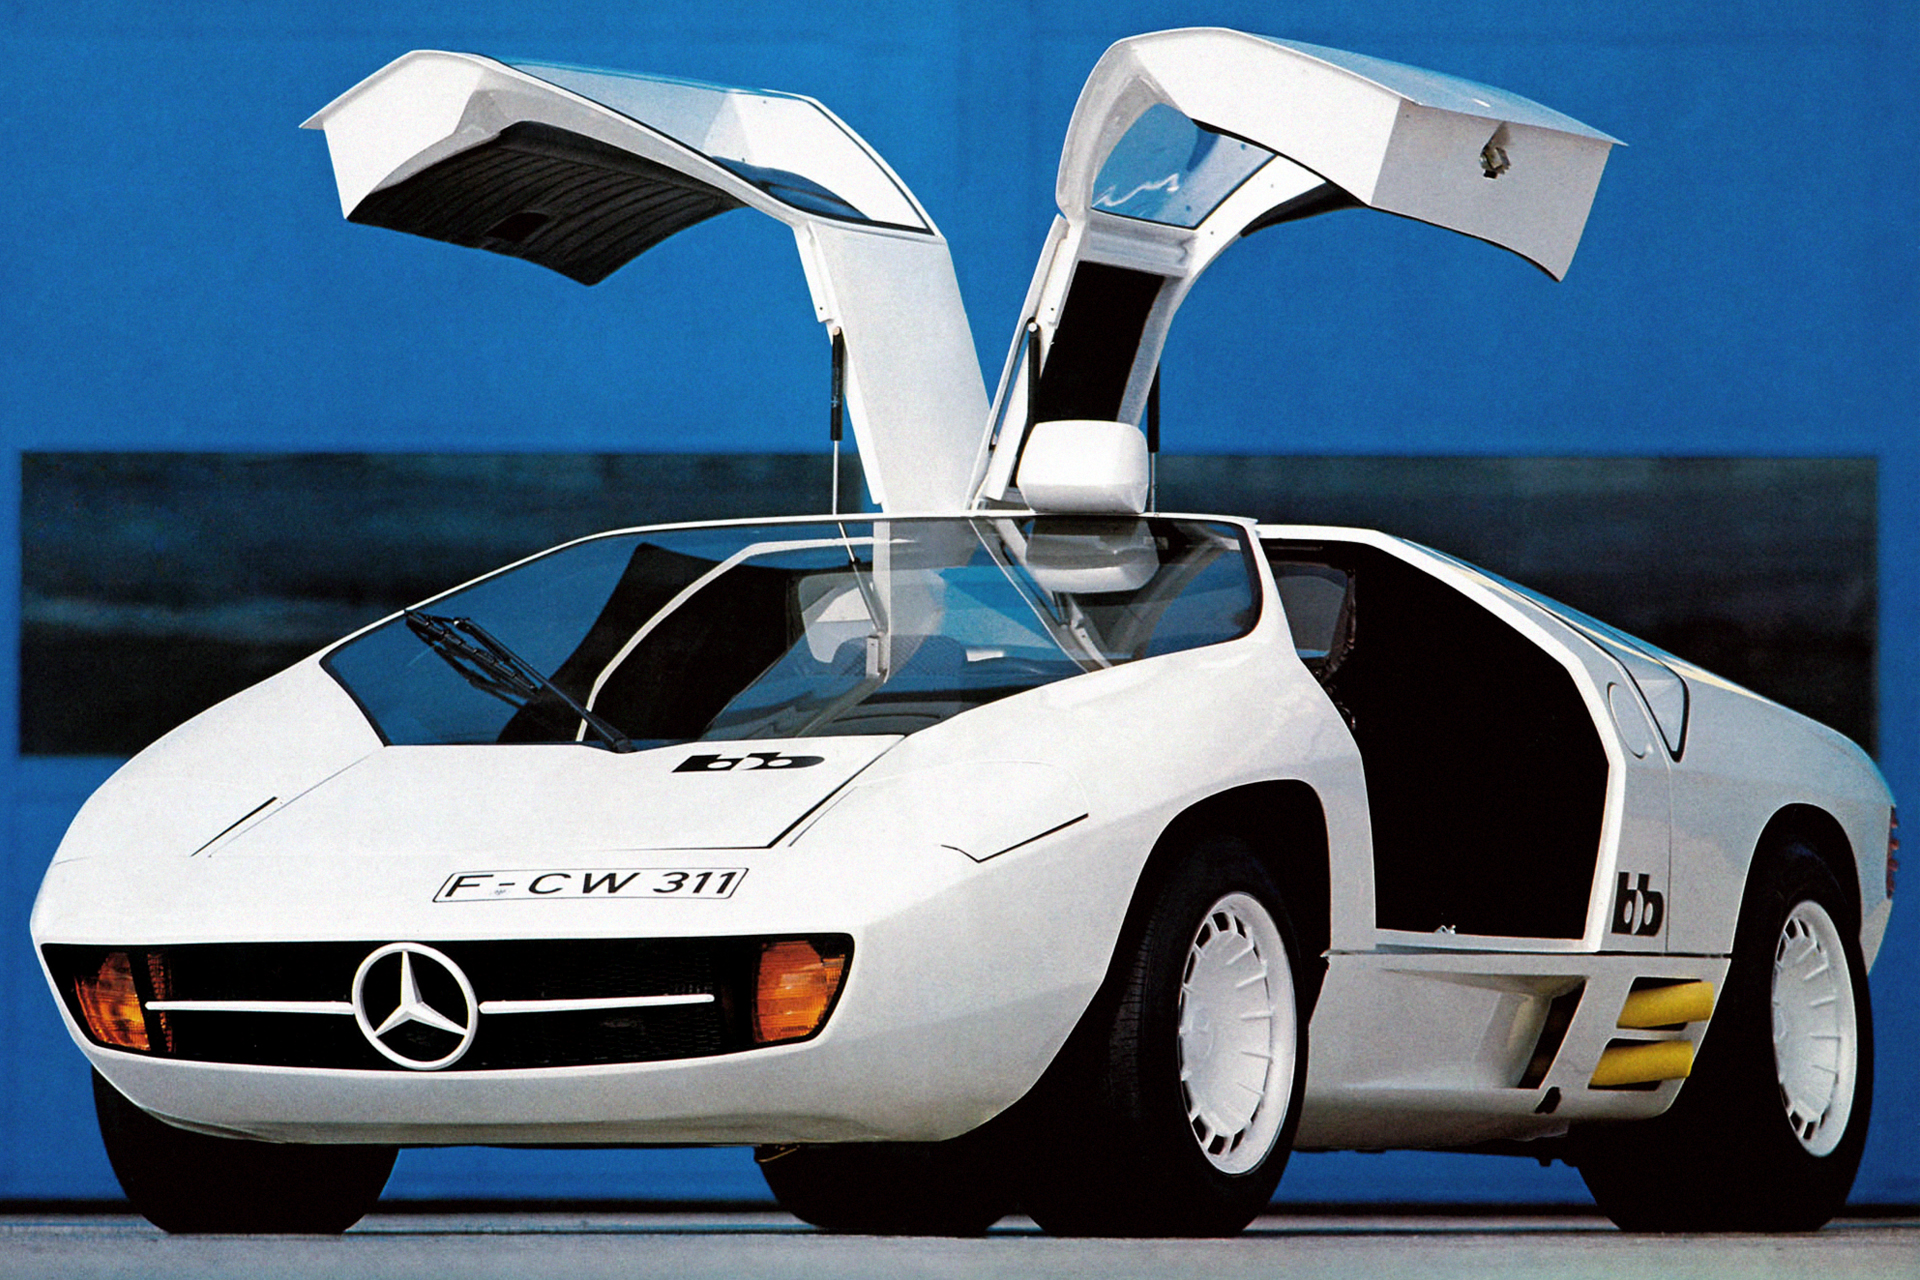 1979 Mercedes-Benz Schulz Studie CW311